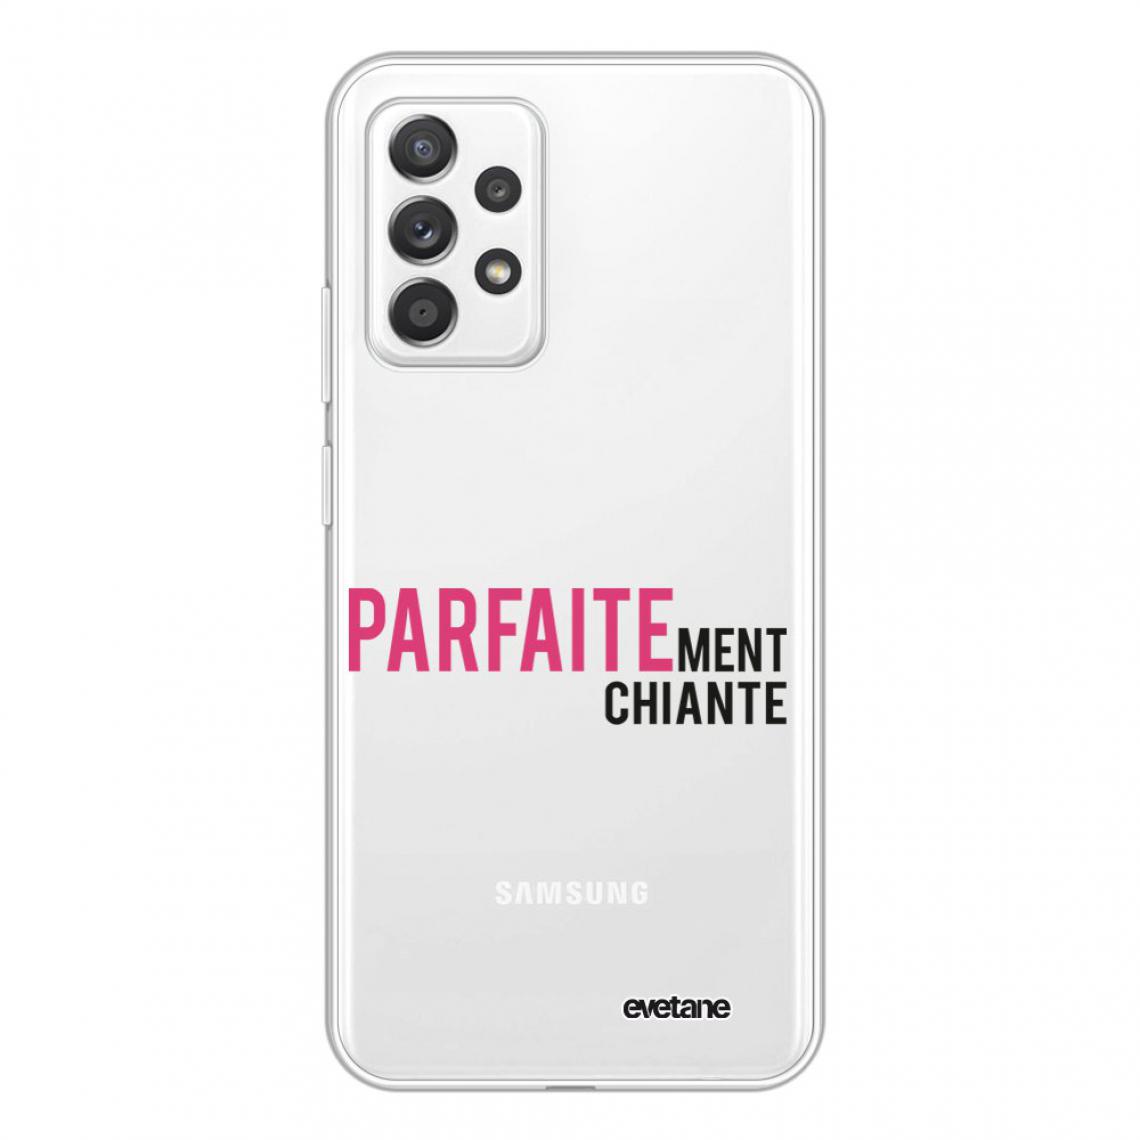 Evetane - Coque Samsung Galaxy A72 souple silicone transparente - Coque, étui smartphone